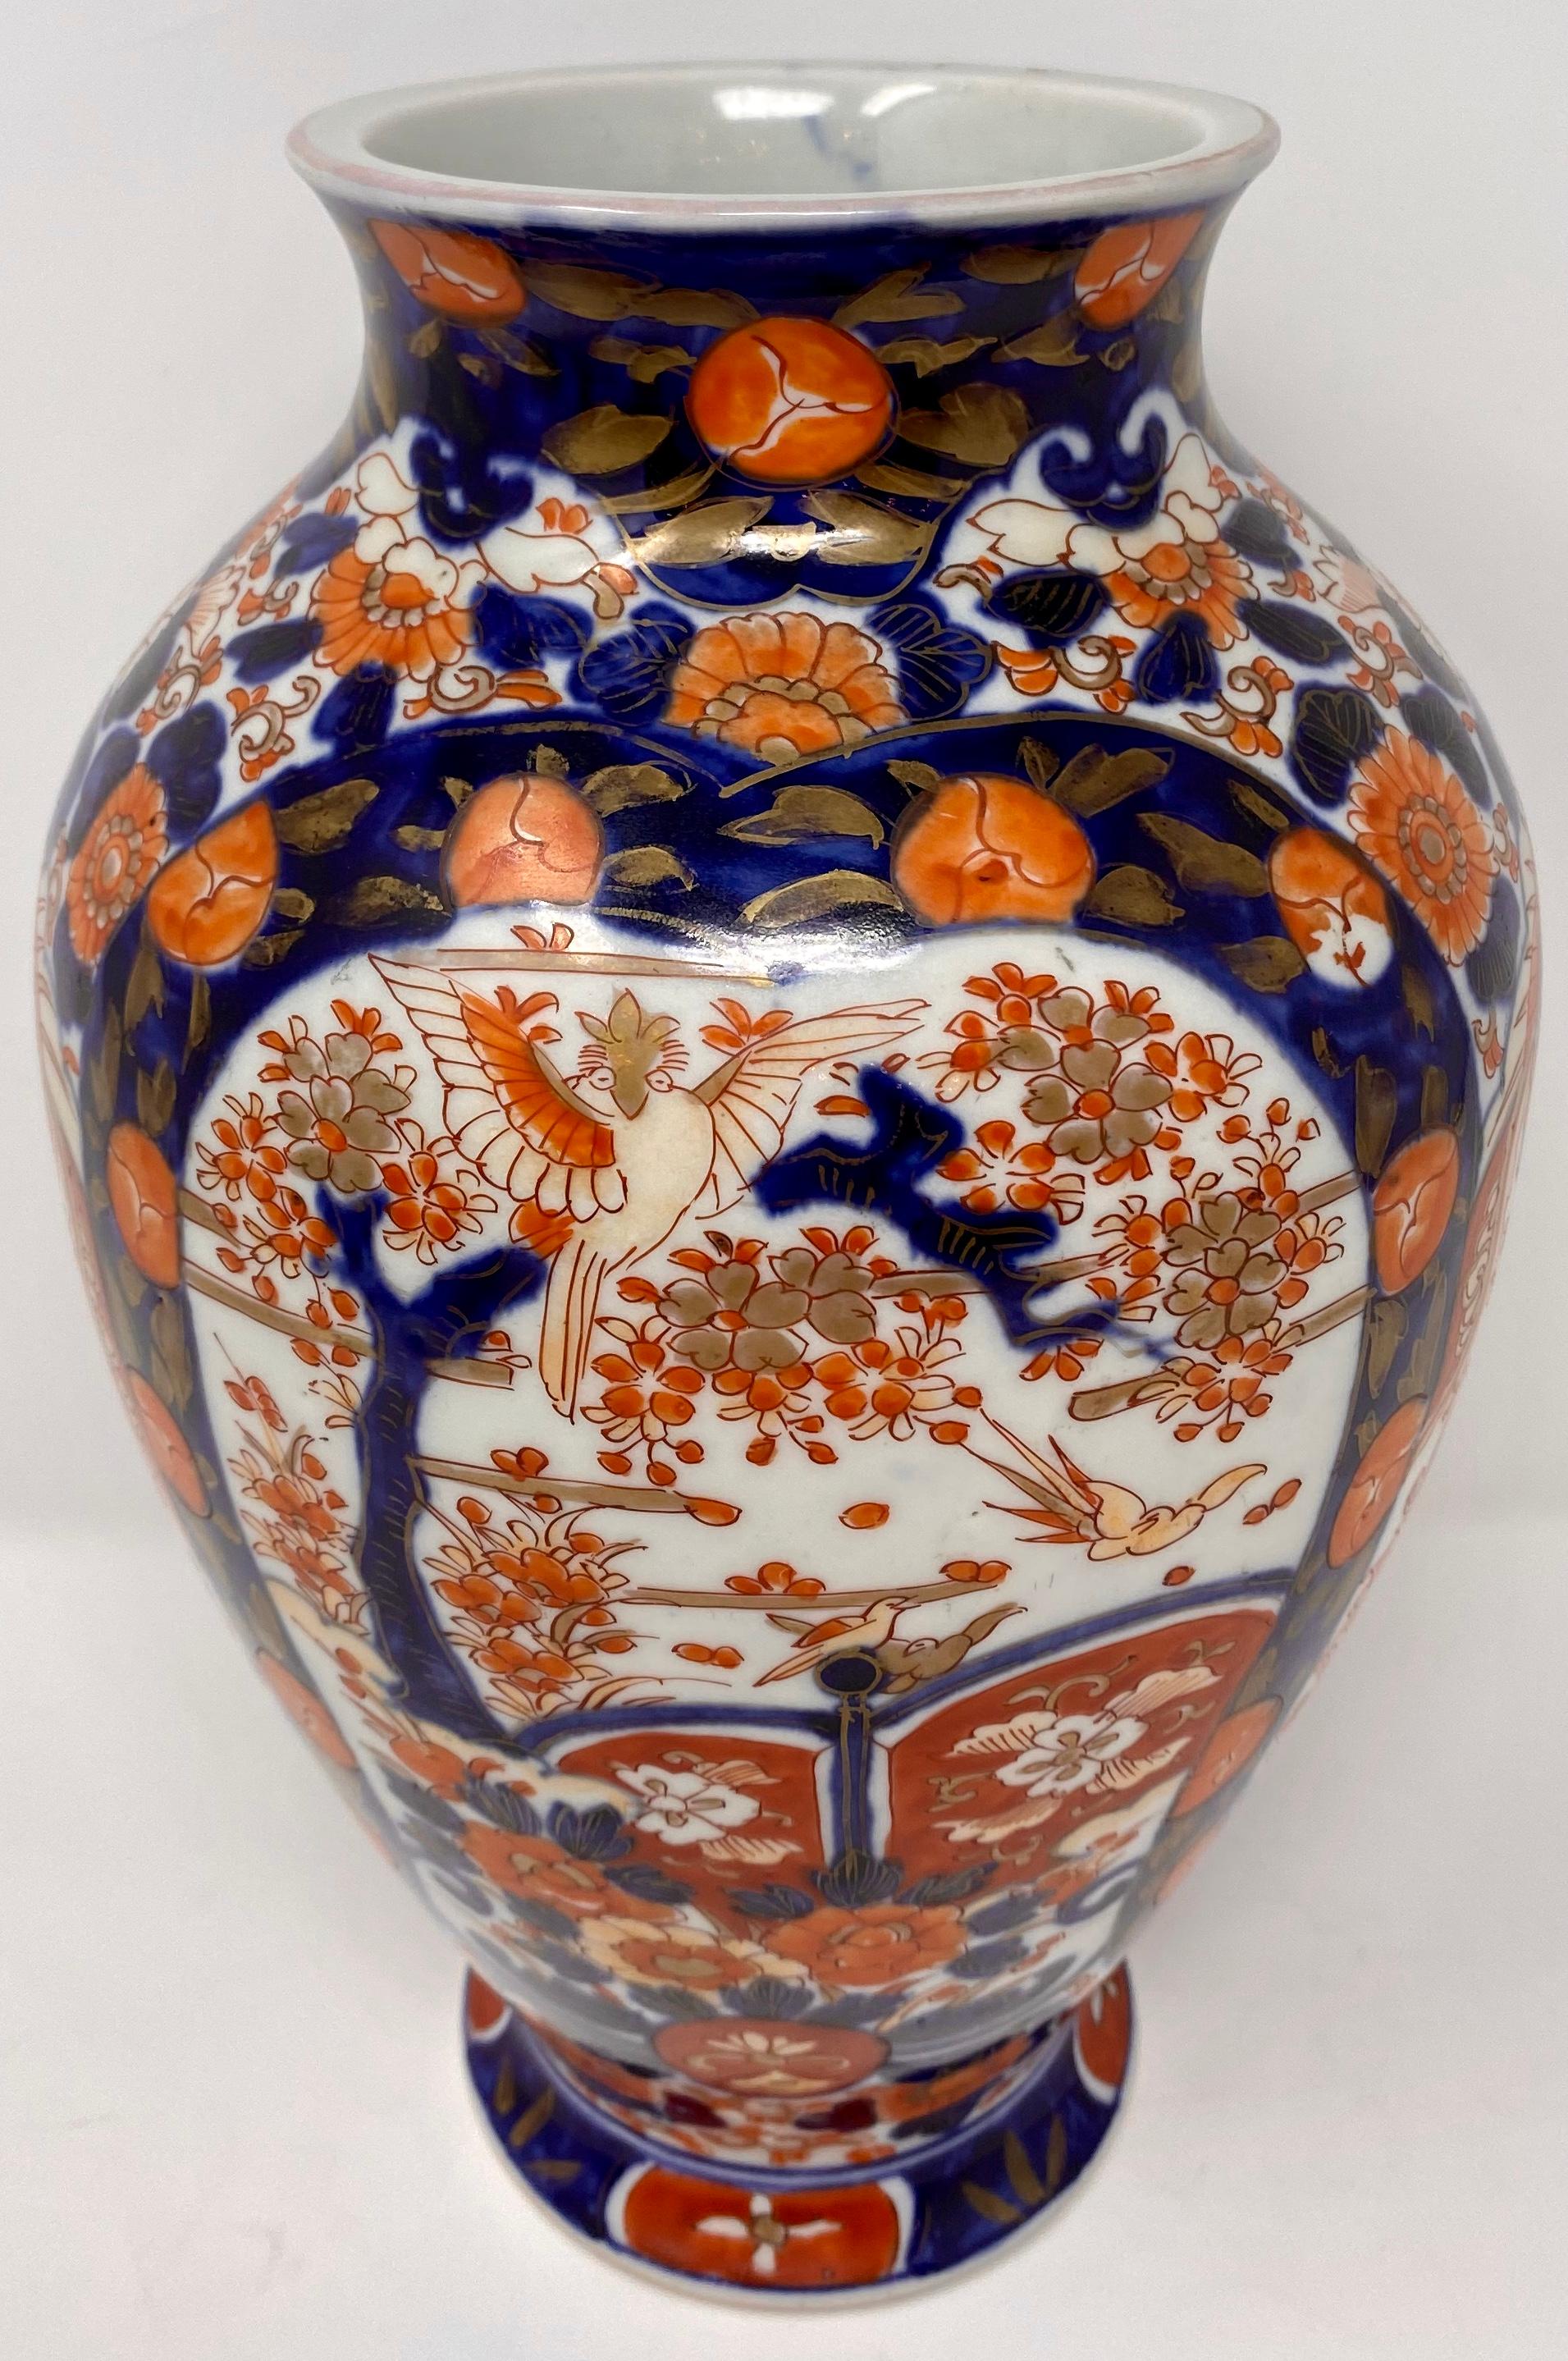 Pair of antique Japanese Imari vases, circa 1860-1870.
